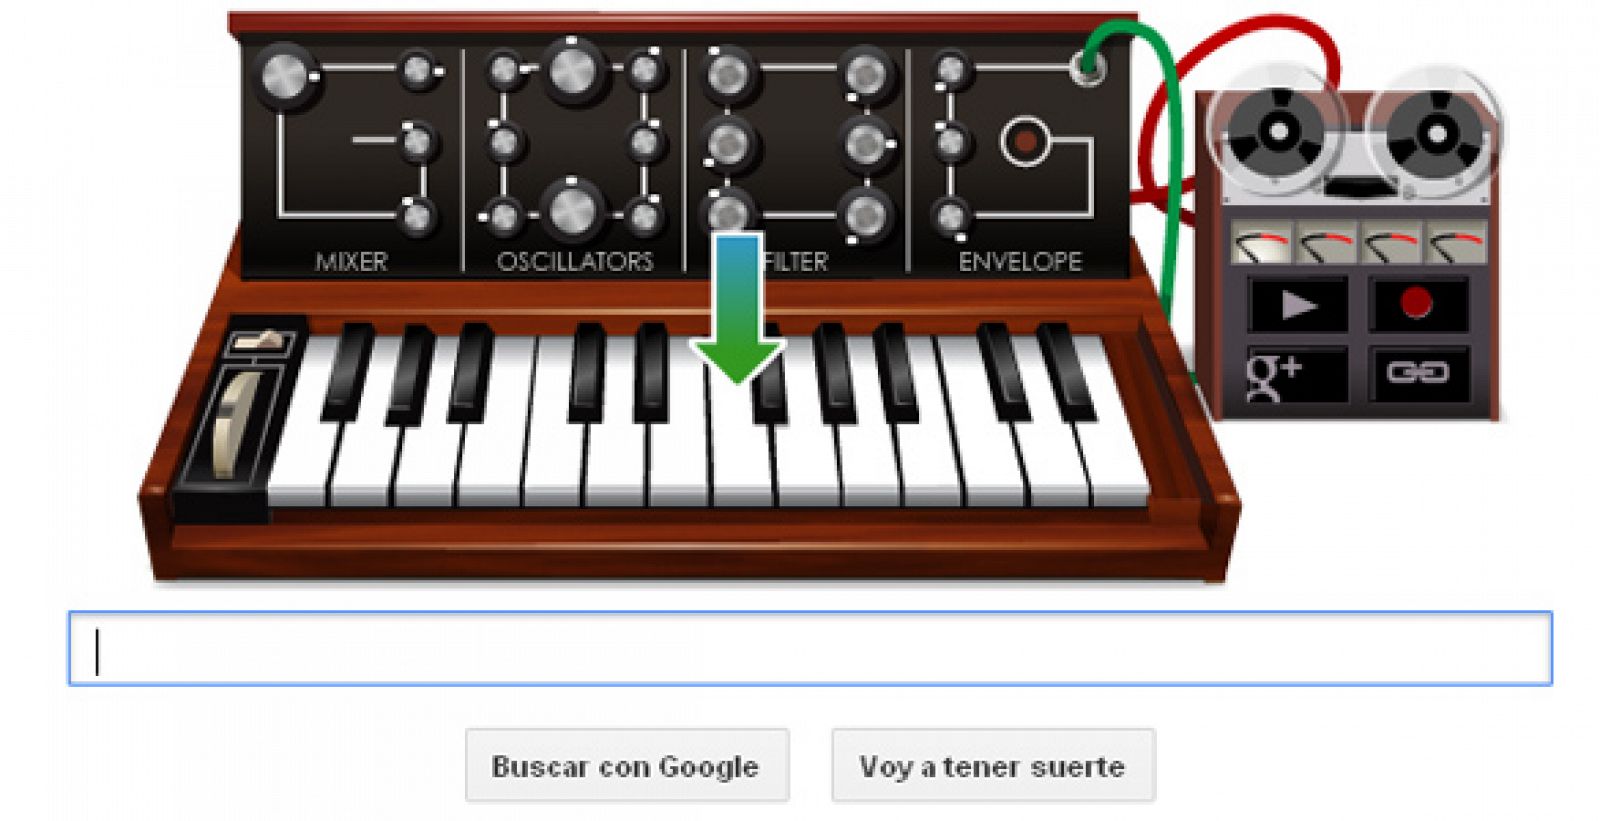 El buscador rinde homenaje a Robert Moog con su famoso sintetizador